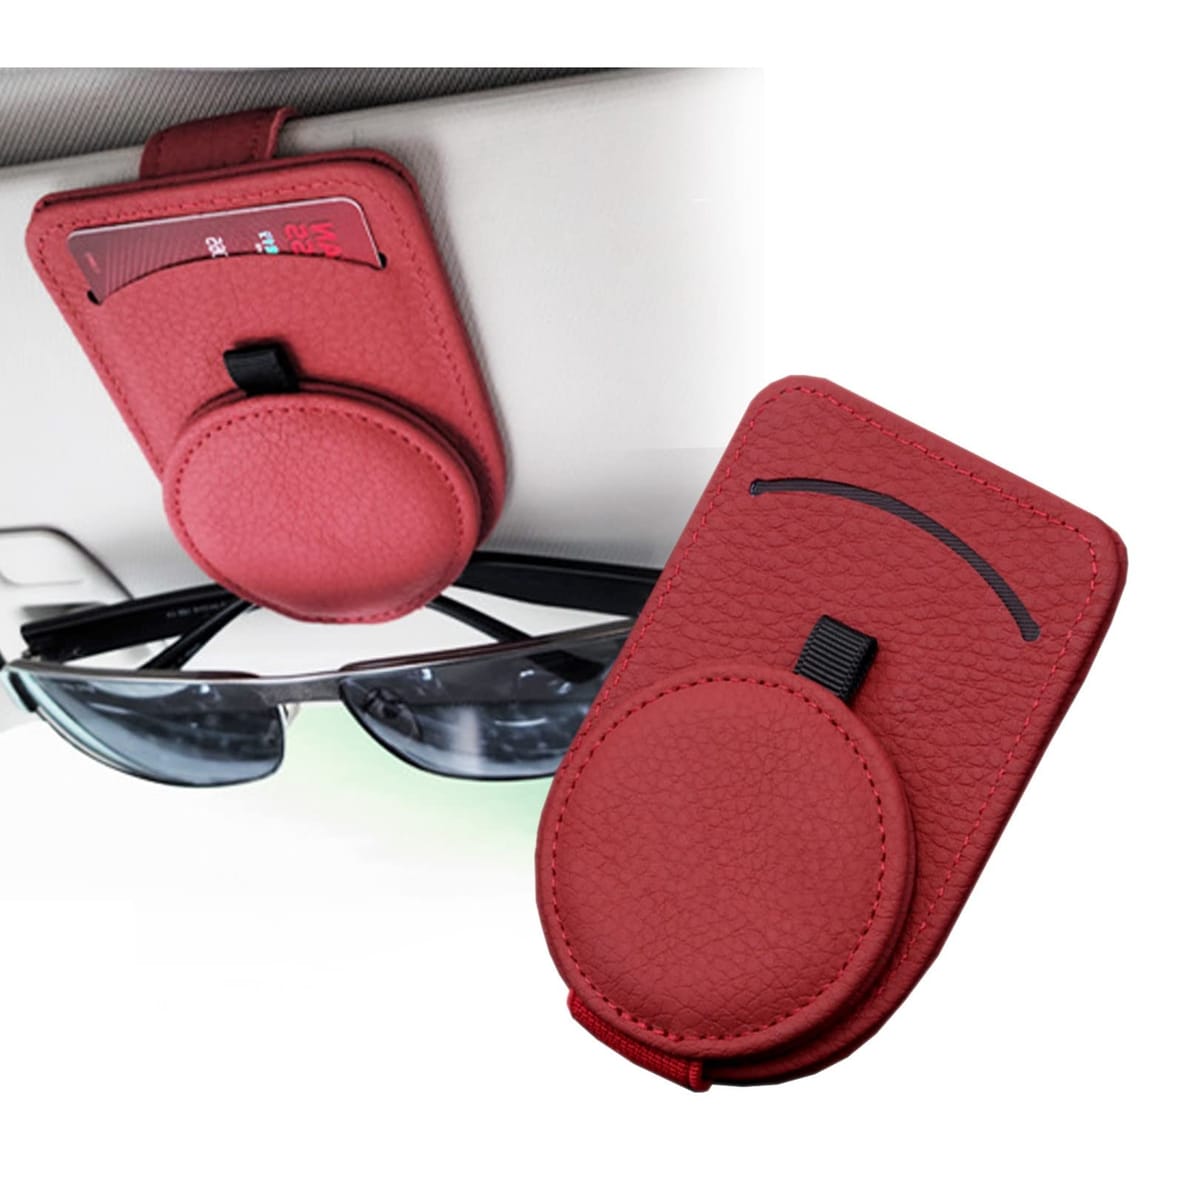 PIENSE 車用 サングラスクリップ 汎用 メガネホルダー 眼鏡 レザー サンバイザー カードポケット付き カー用品